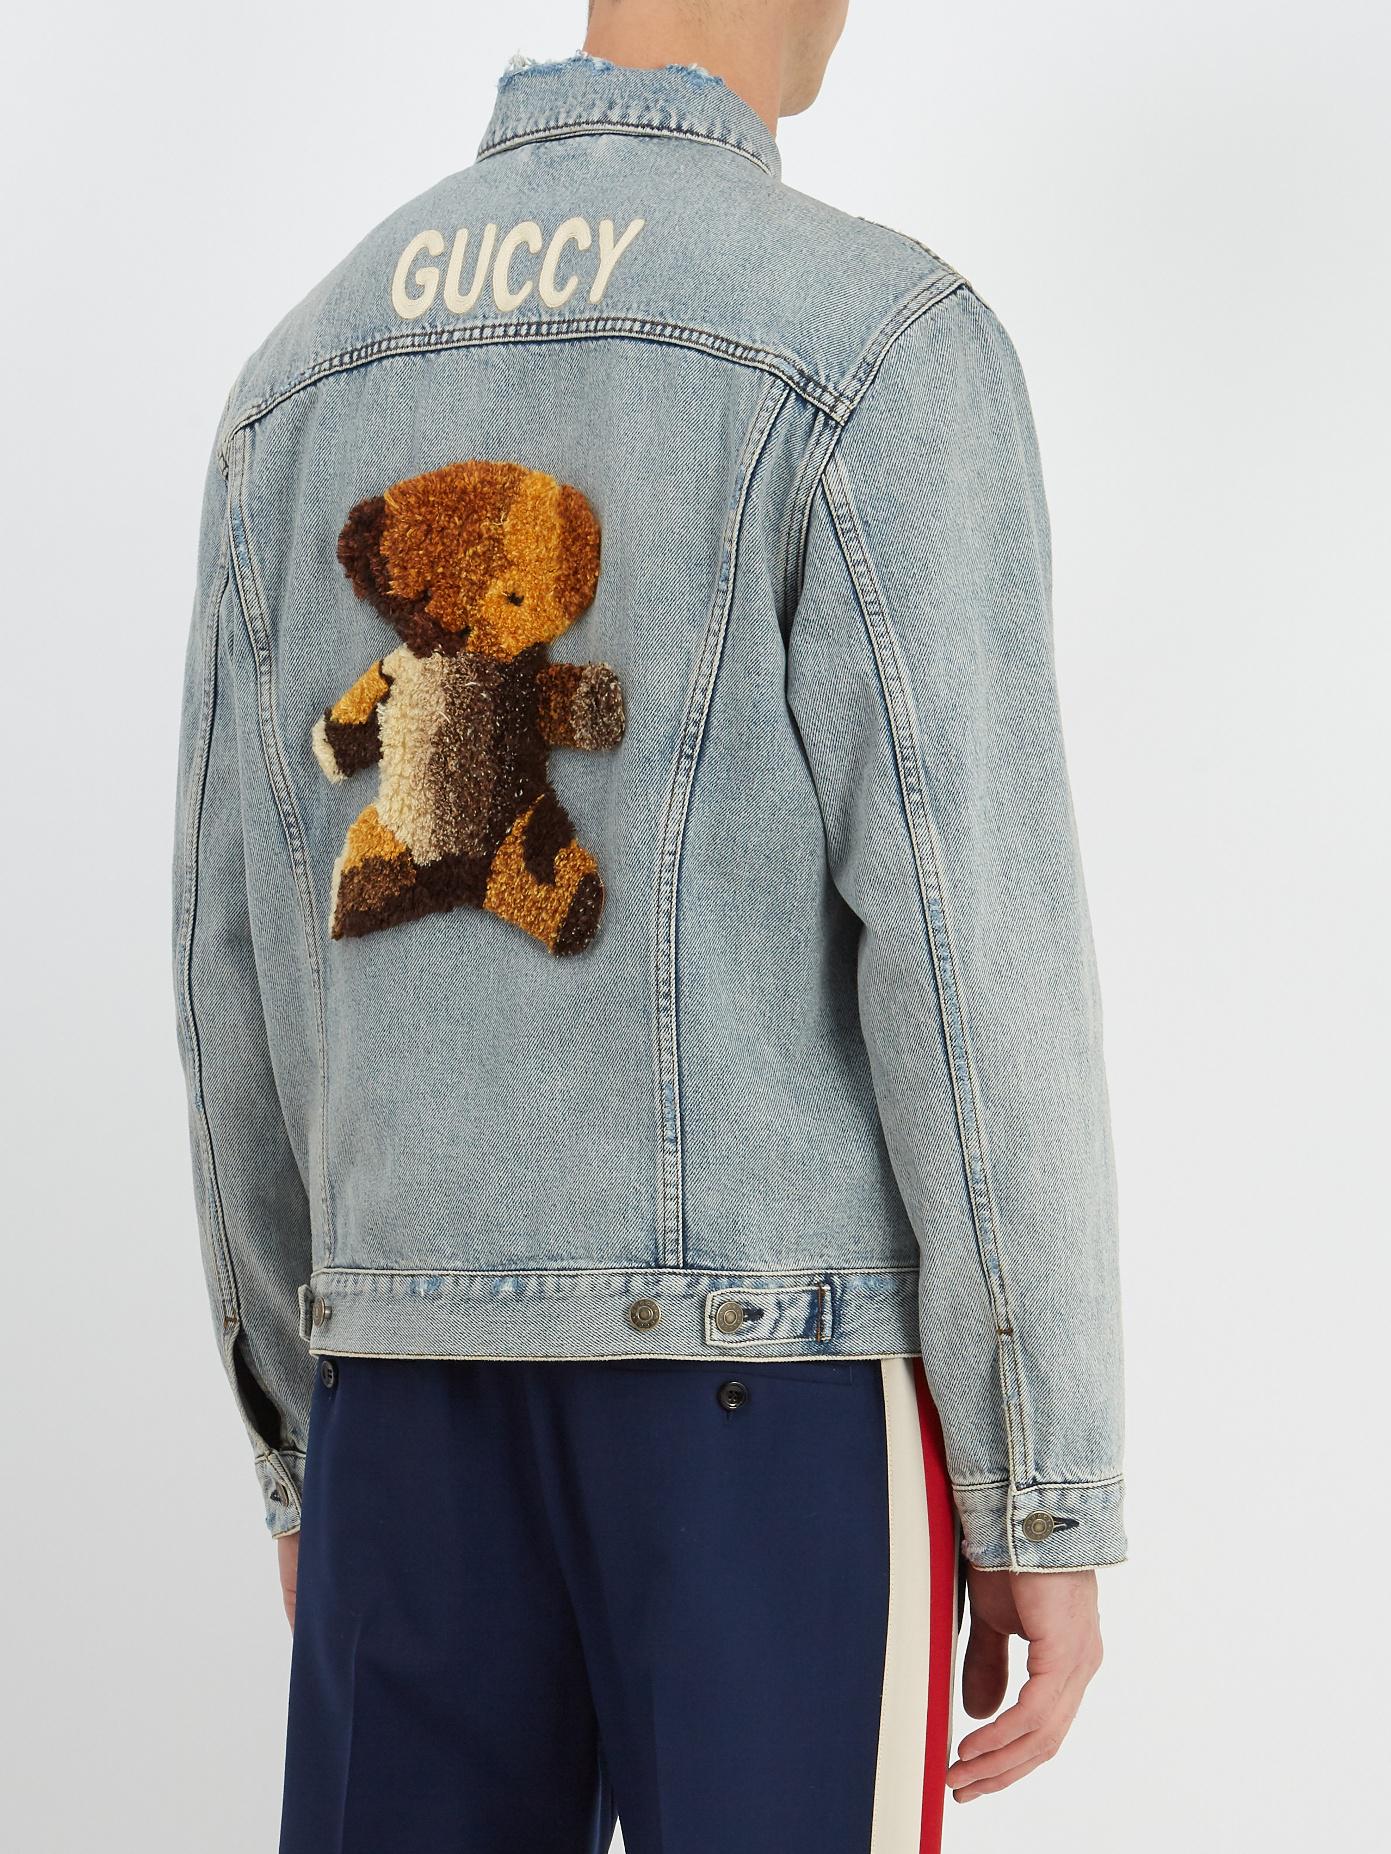 guccy bear denim jacket, OFF 79%,Buy!